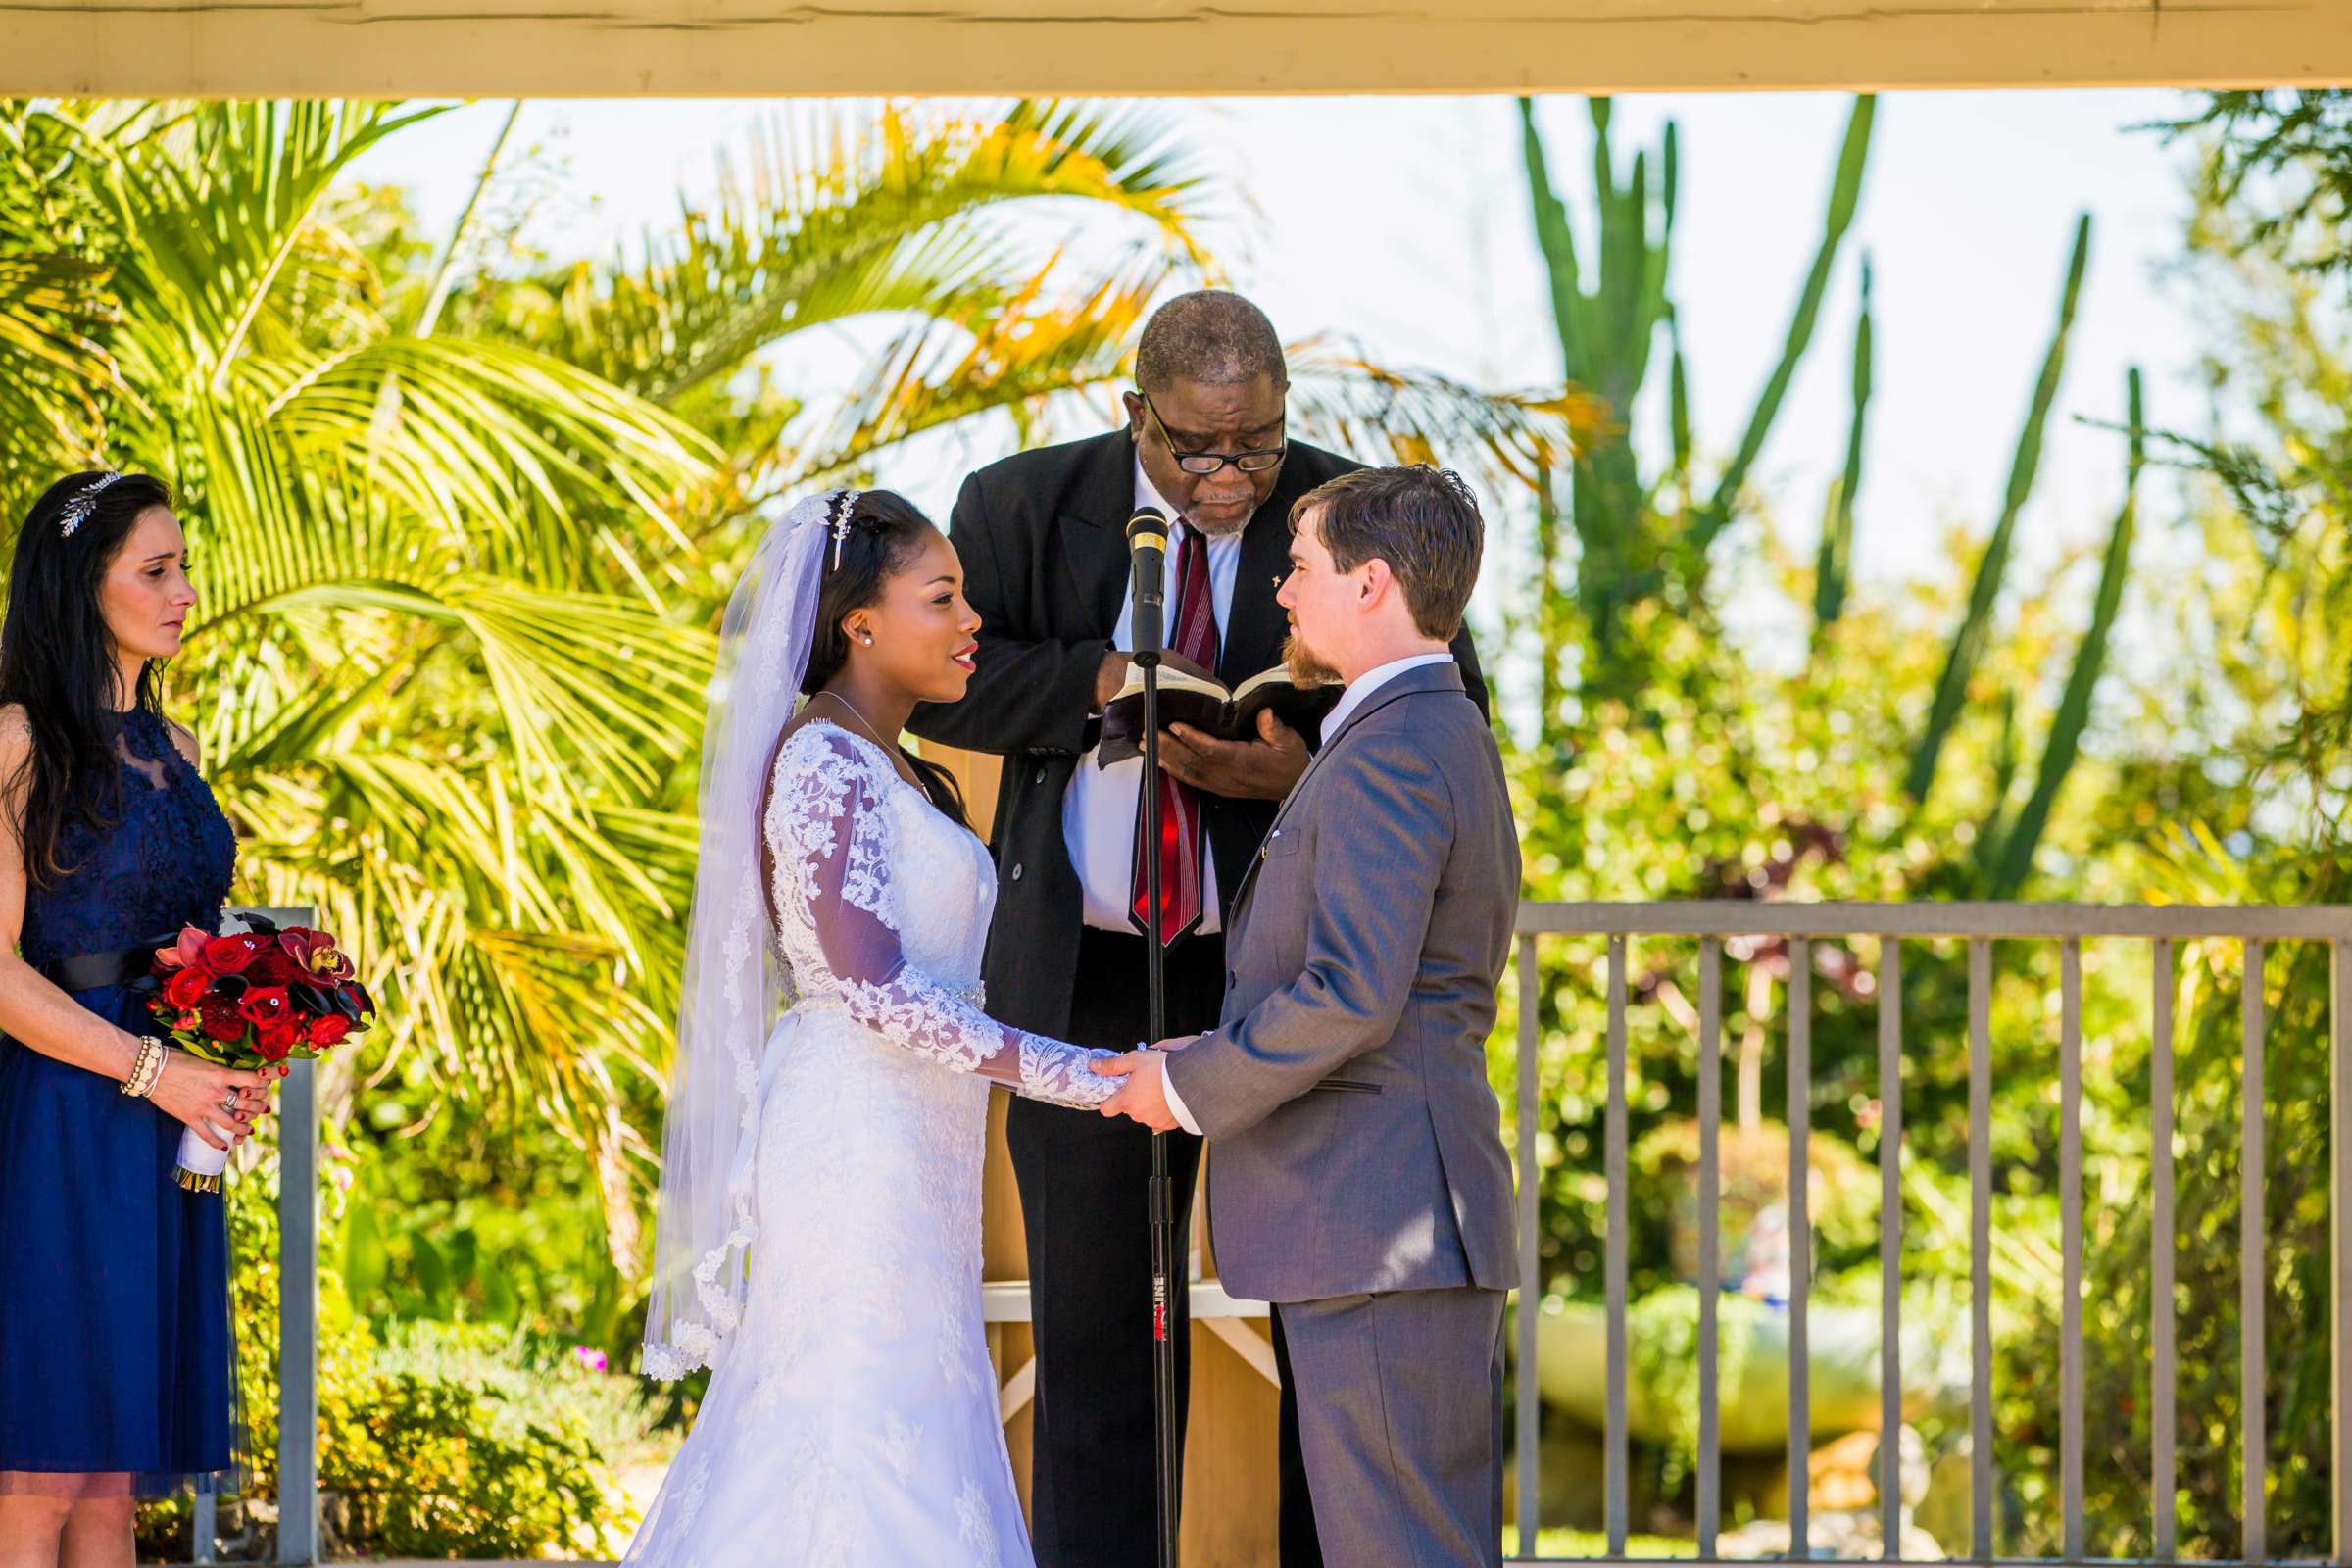 Fallbrook Hacienda Wedding, Elizabeth and Nicholas Wedding Photo #425249 by True Photography